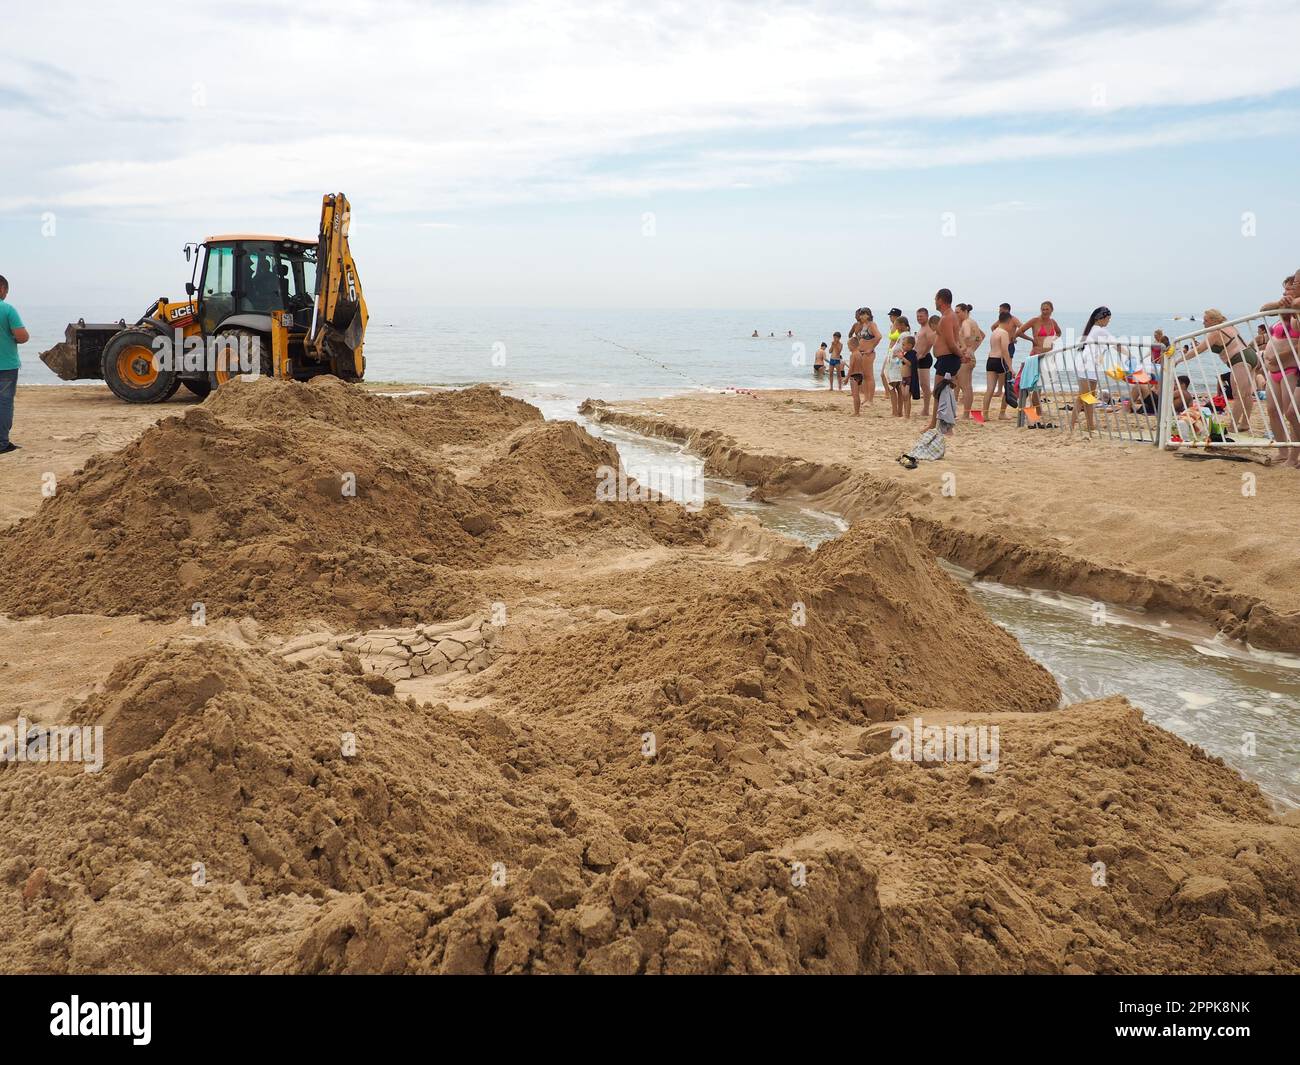 Anapa, Russland, 19. August 2021 Ein Traktor gräbt einen Graben an einem Sandstrand, um verschüttetes Abwasser nach langen Regenfällen abzuleiten. Leute, die Touristen sehen sich Erdbauarbeiten an. Abstieg des Wassers ins Meer Stockfoto